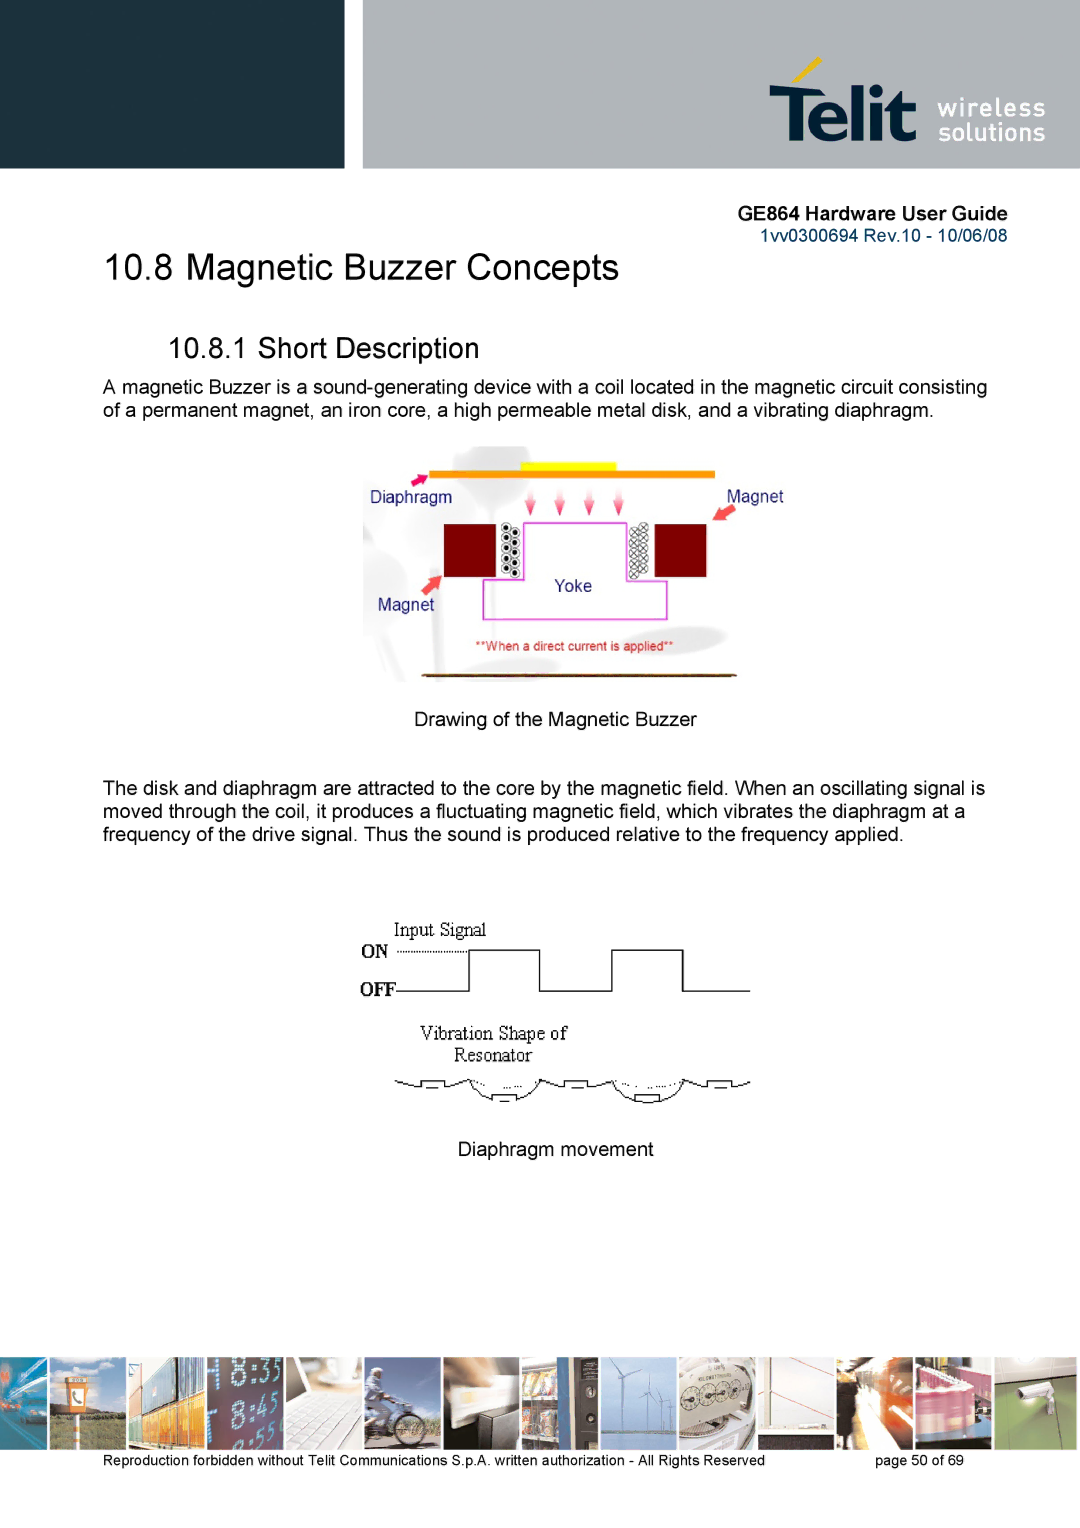 Telit Wireless Solutions GE864 manual Magnetic Buzzer Concepts, Short Description 